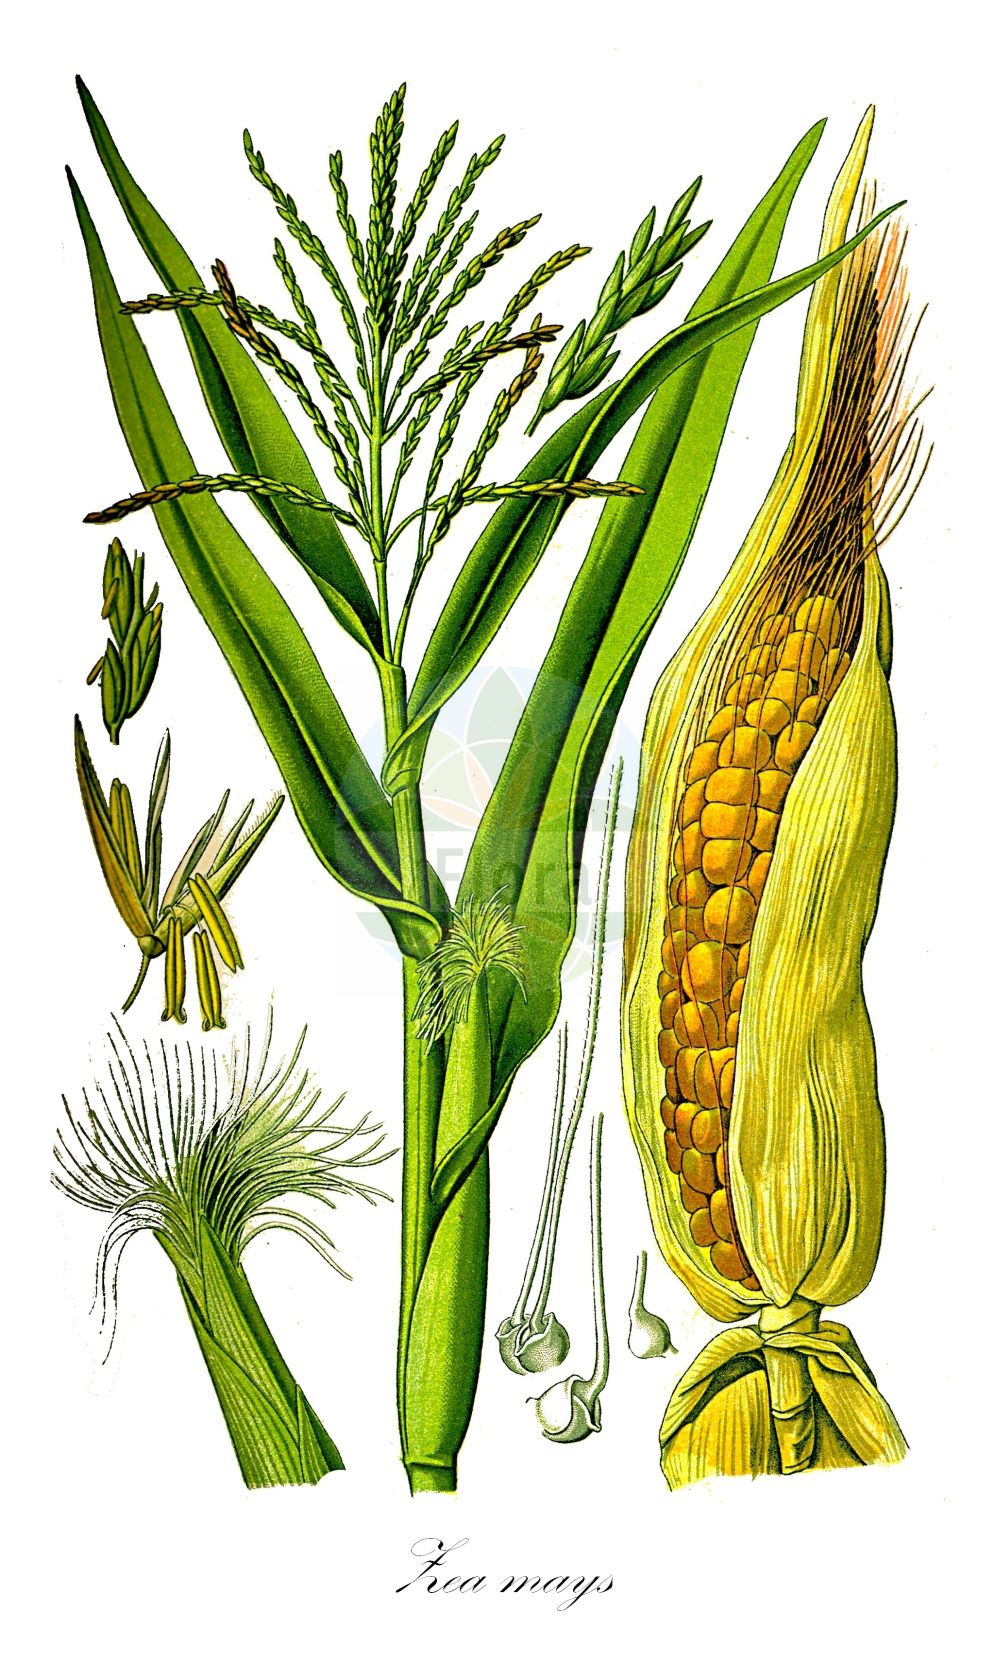 Historische Abbildung von Zea mays (Mais - Maize). ---- Historical Drawing of Zea mays (Mais - Maize).(Zea mays,Mais,Maize,Zea mays,Mais,Kukuruz,Tuerken,Tuerkischer Weizen,Welschkorn,Maize,Corn,Indian Corn,Zea,Mais,Corn,Poaceae,Süßgräser,Grass family,Thomé (1885))